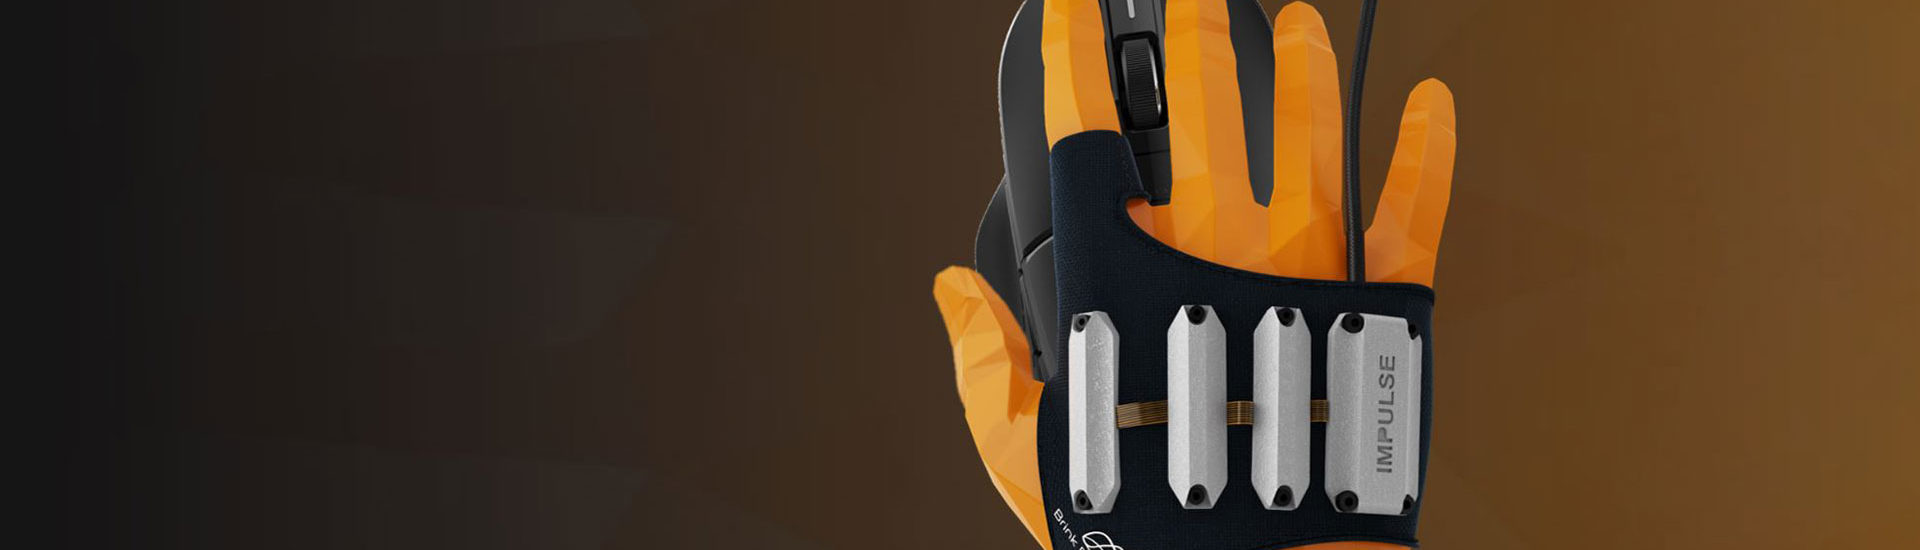 Brinks Bionics: Gaming-Handschuh, der euch schneller klicken lässt